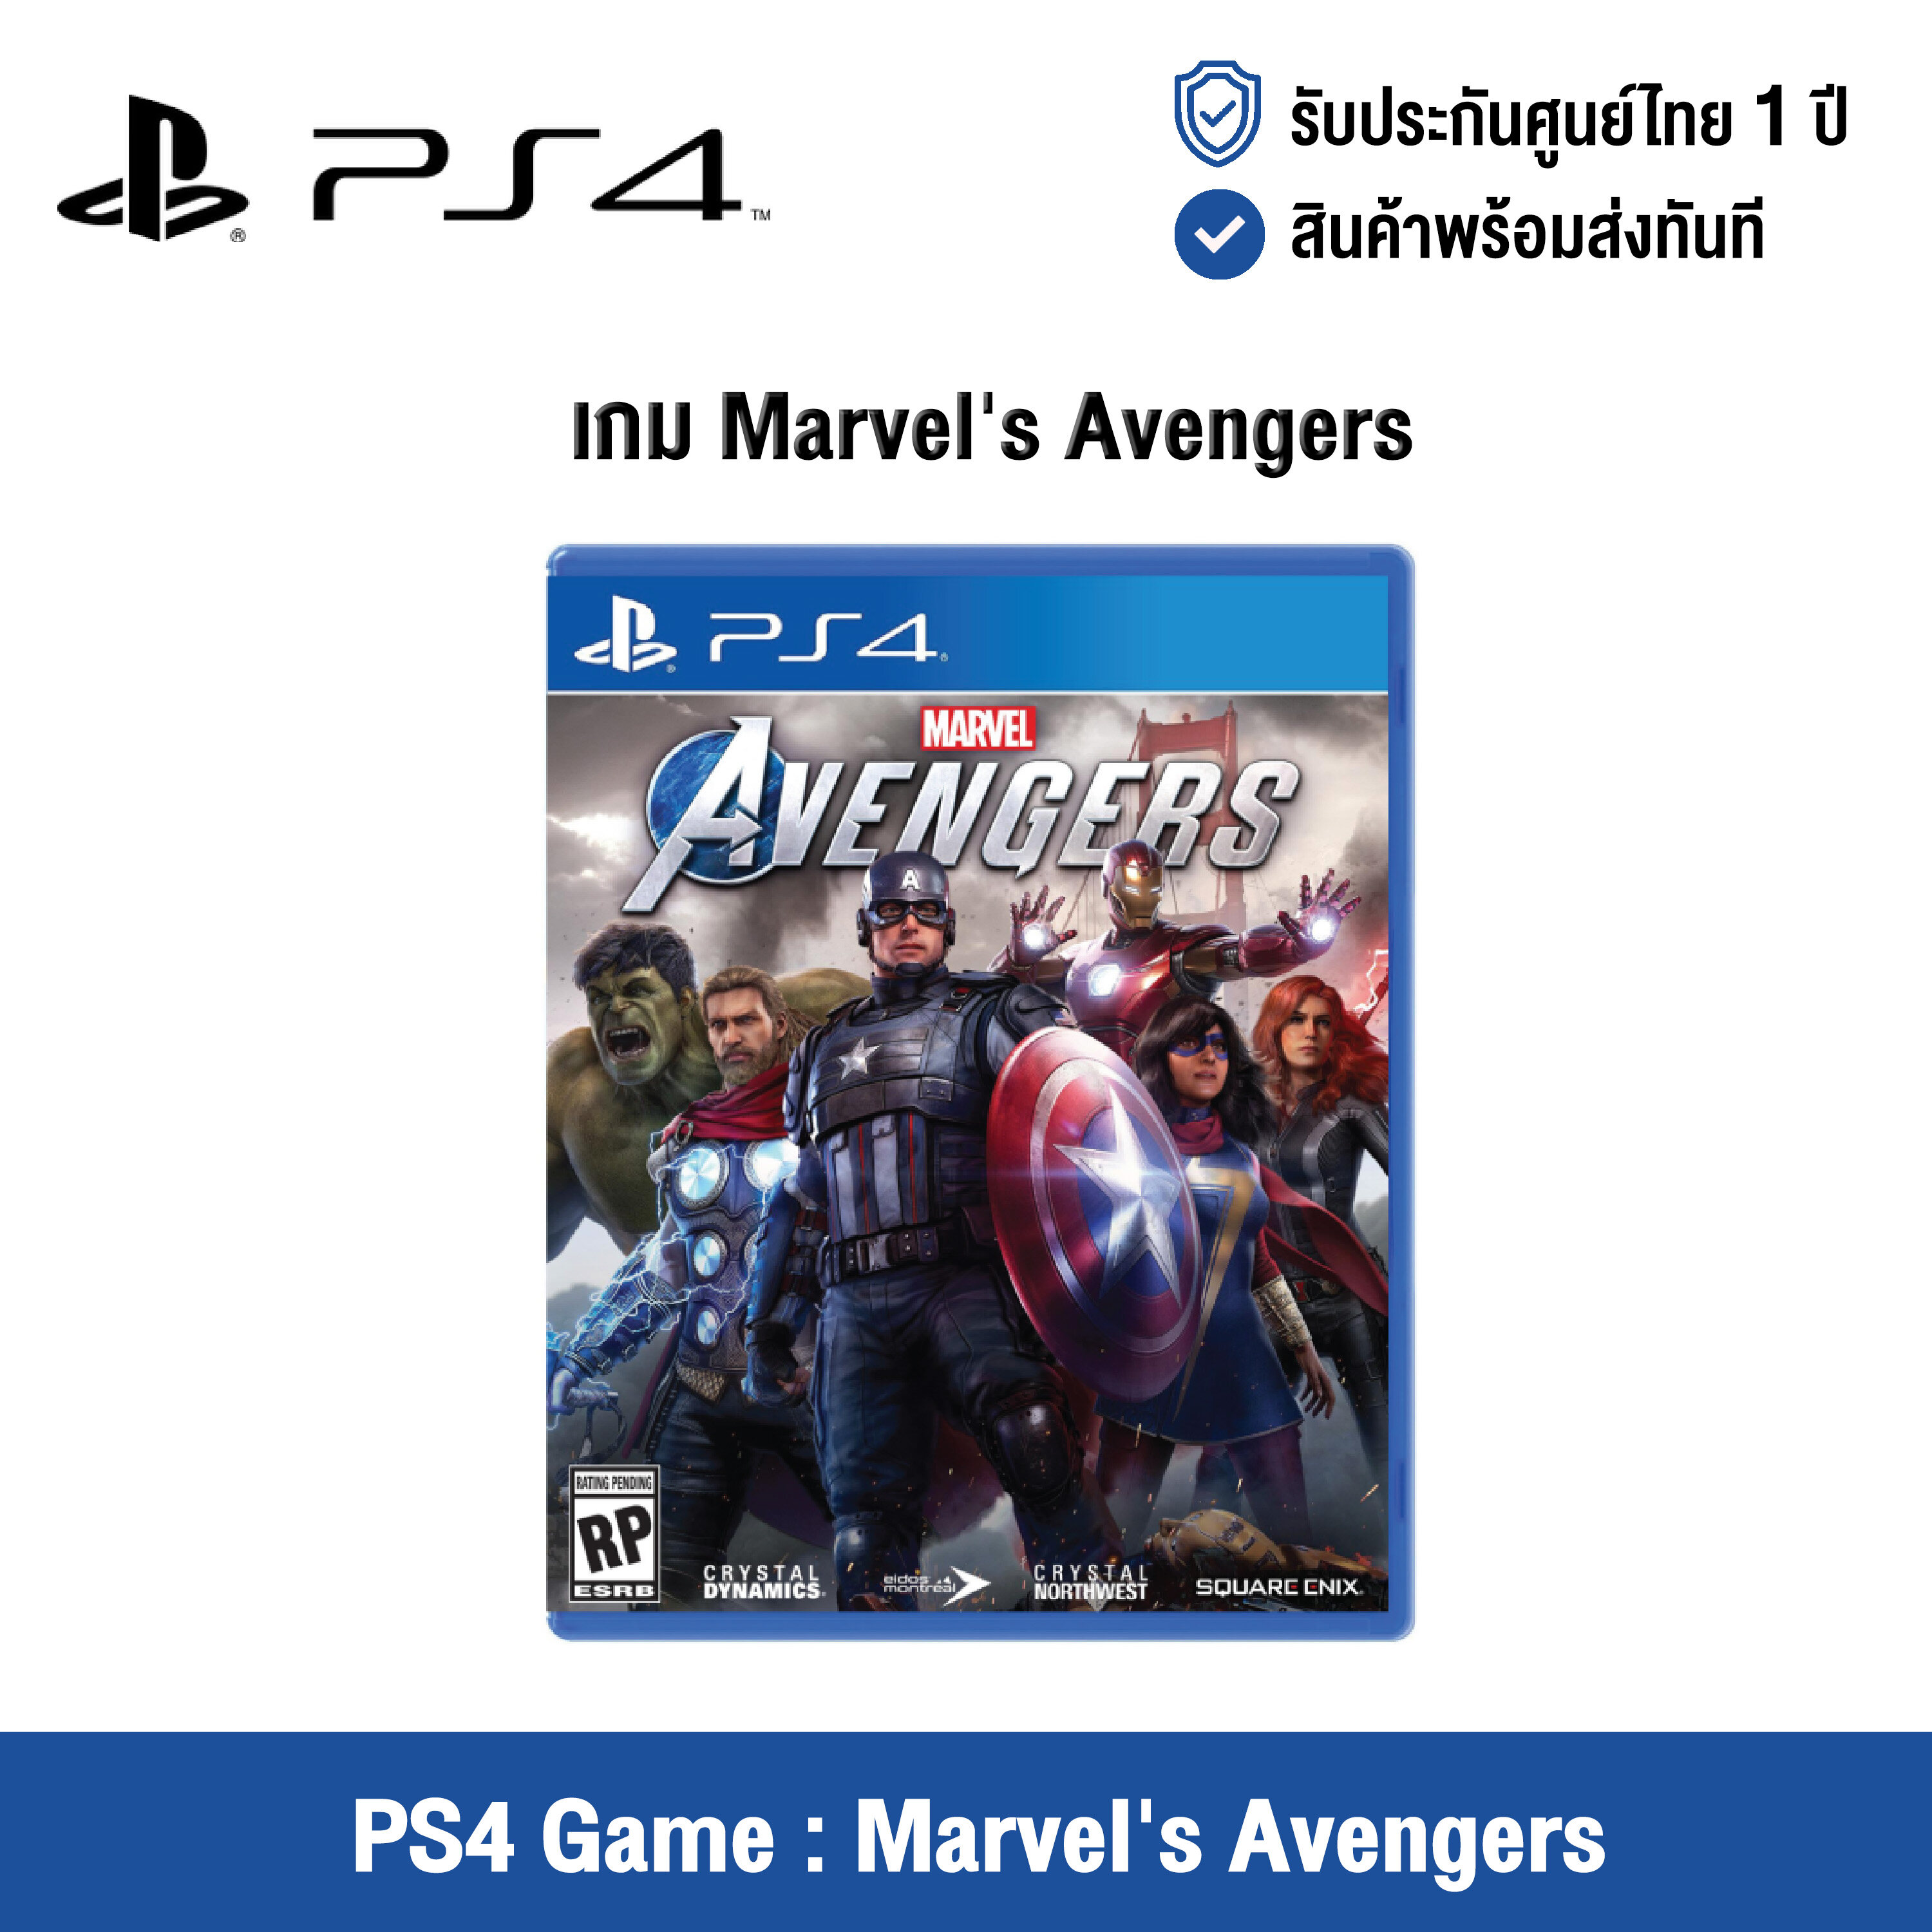 [ศูนย์ไทย] PS4 Game : Marvel's Avengers - แผ่นเกมส์ Marvel's Avengers (English Version)